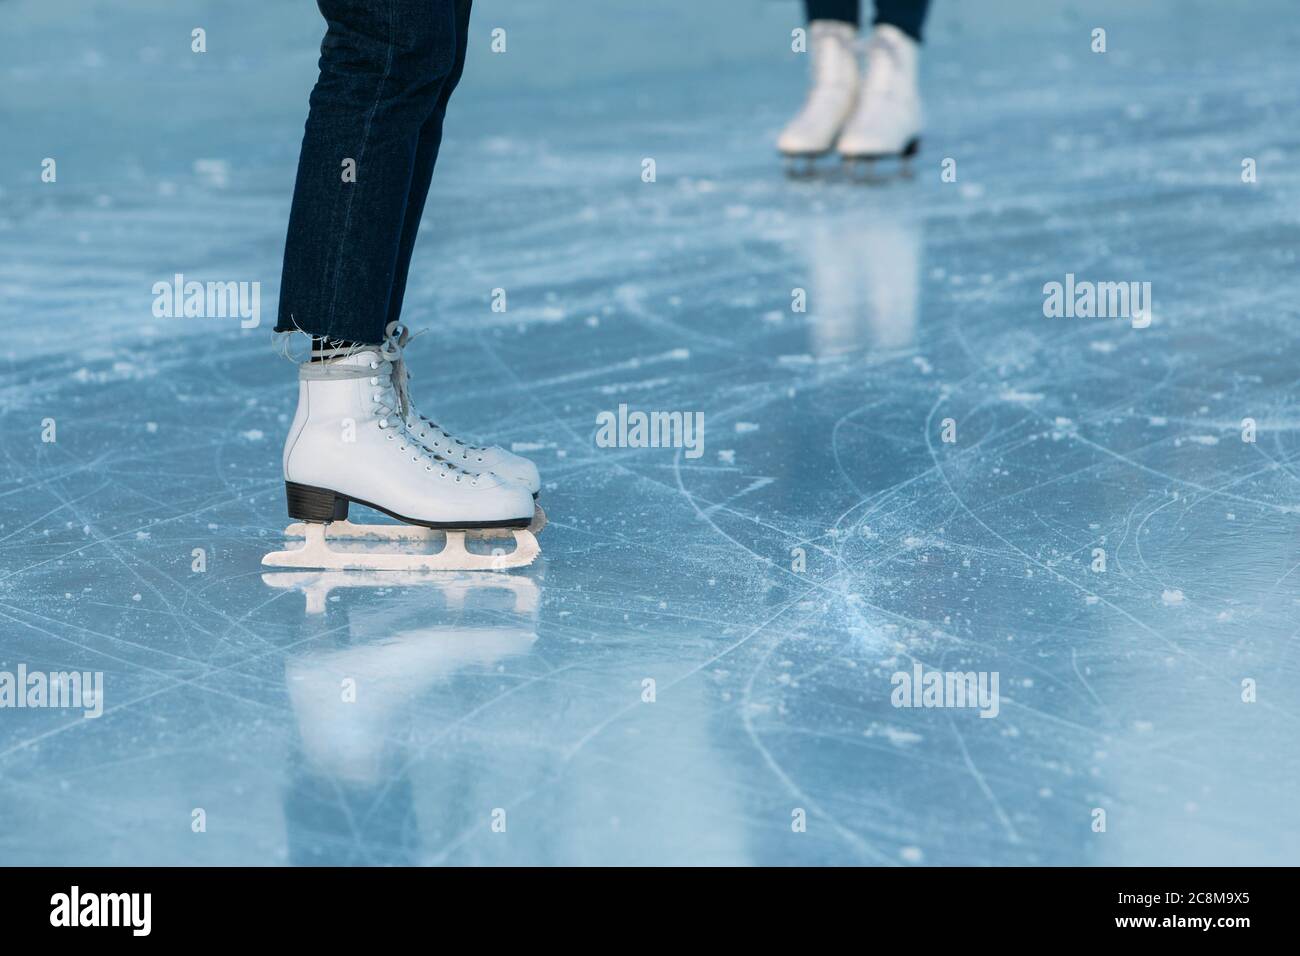 Nahaufnahme der Beine des Eislaufes auf der Eisbahn im Freien. Frau steht in weißen Schlittschuhe. Wochenend-Aktivitäten im Freien bei kaltem Wetter. Stockfoto